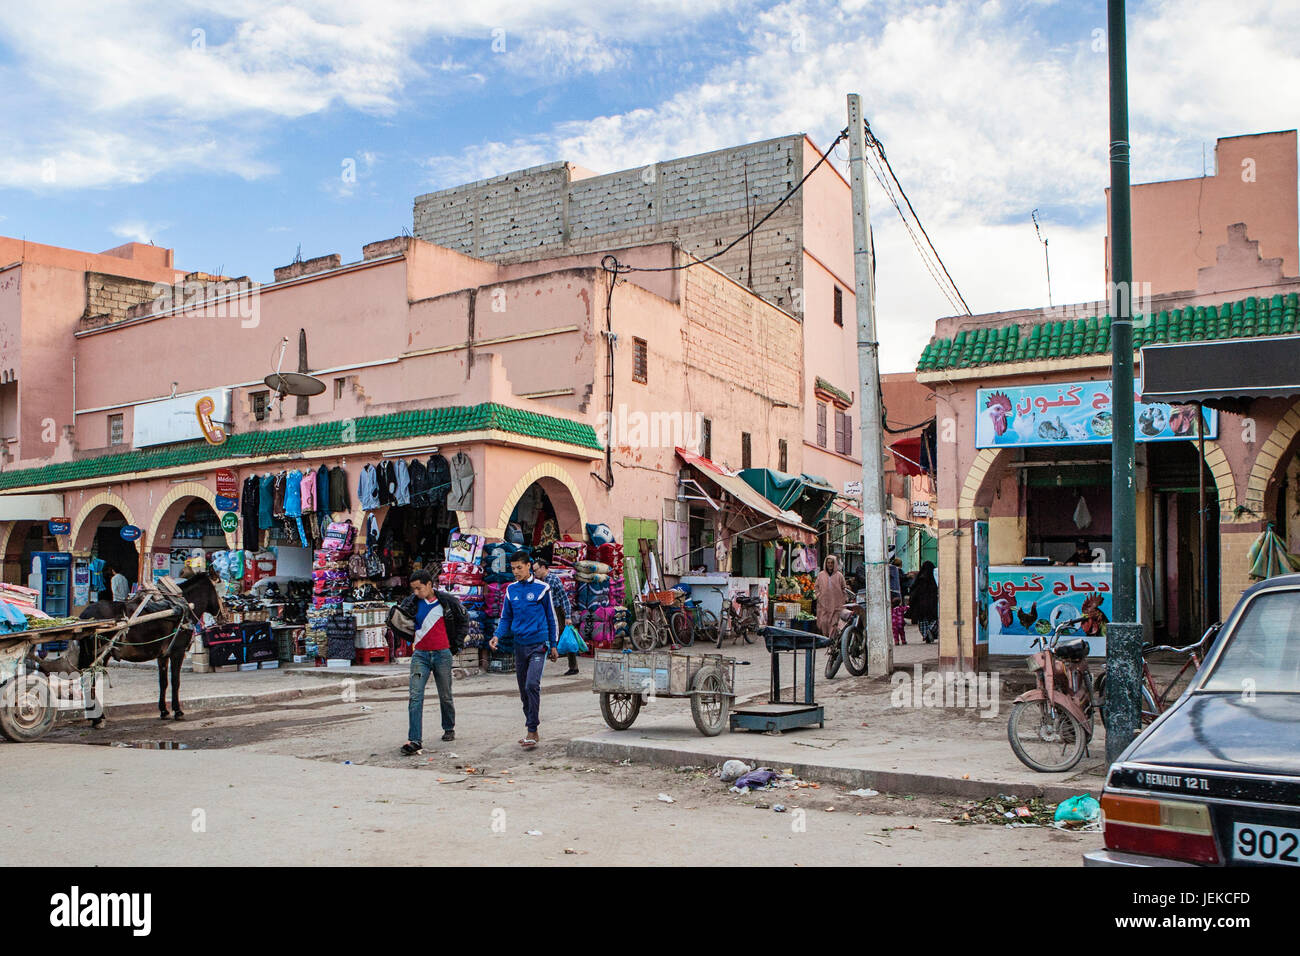 Las pequeñas ciudades de Marruecos. Calles de tiendas y de la vida cotidiana. Foto de stock